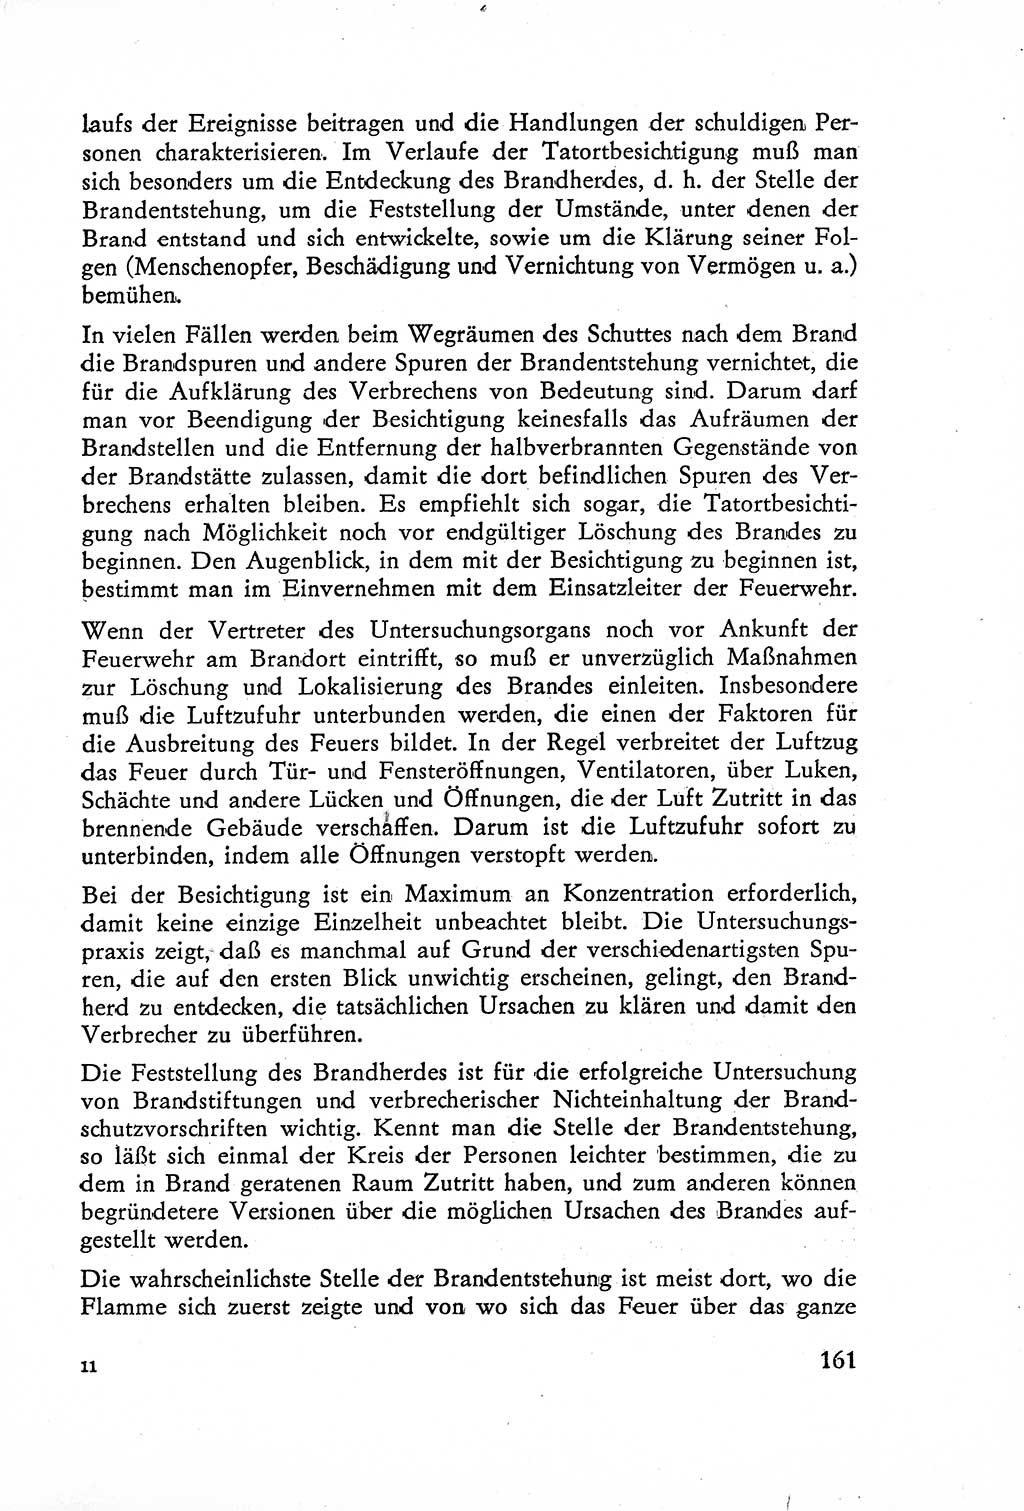 Die Untersuchung einzelner Verbrechensarten [Deutsche Demokratische Republik (DDR)] 1960, Seite 161 (Unters. Verbr.-Art. DDR 1960, S. 161)